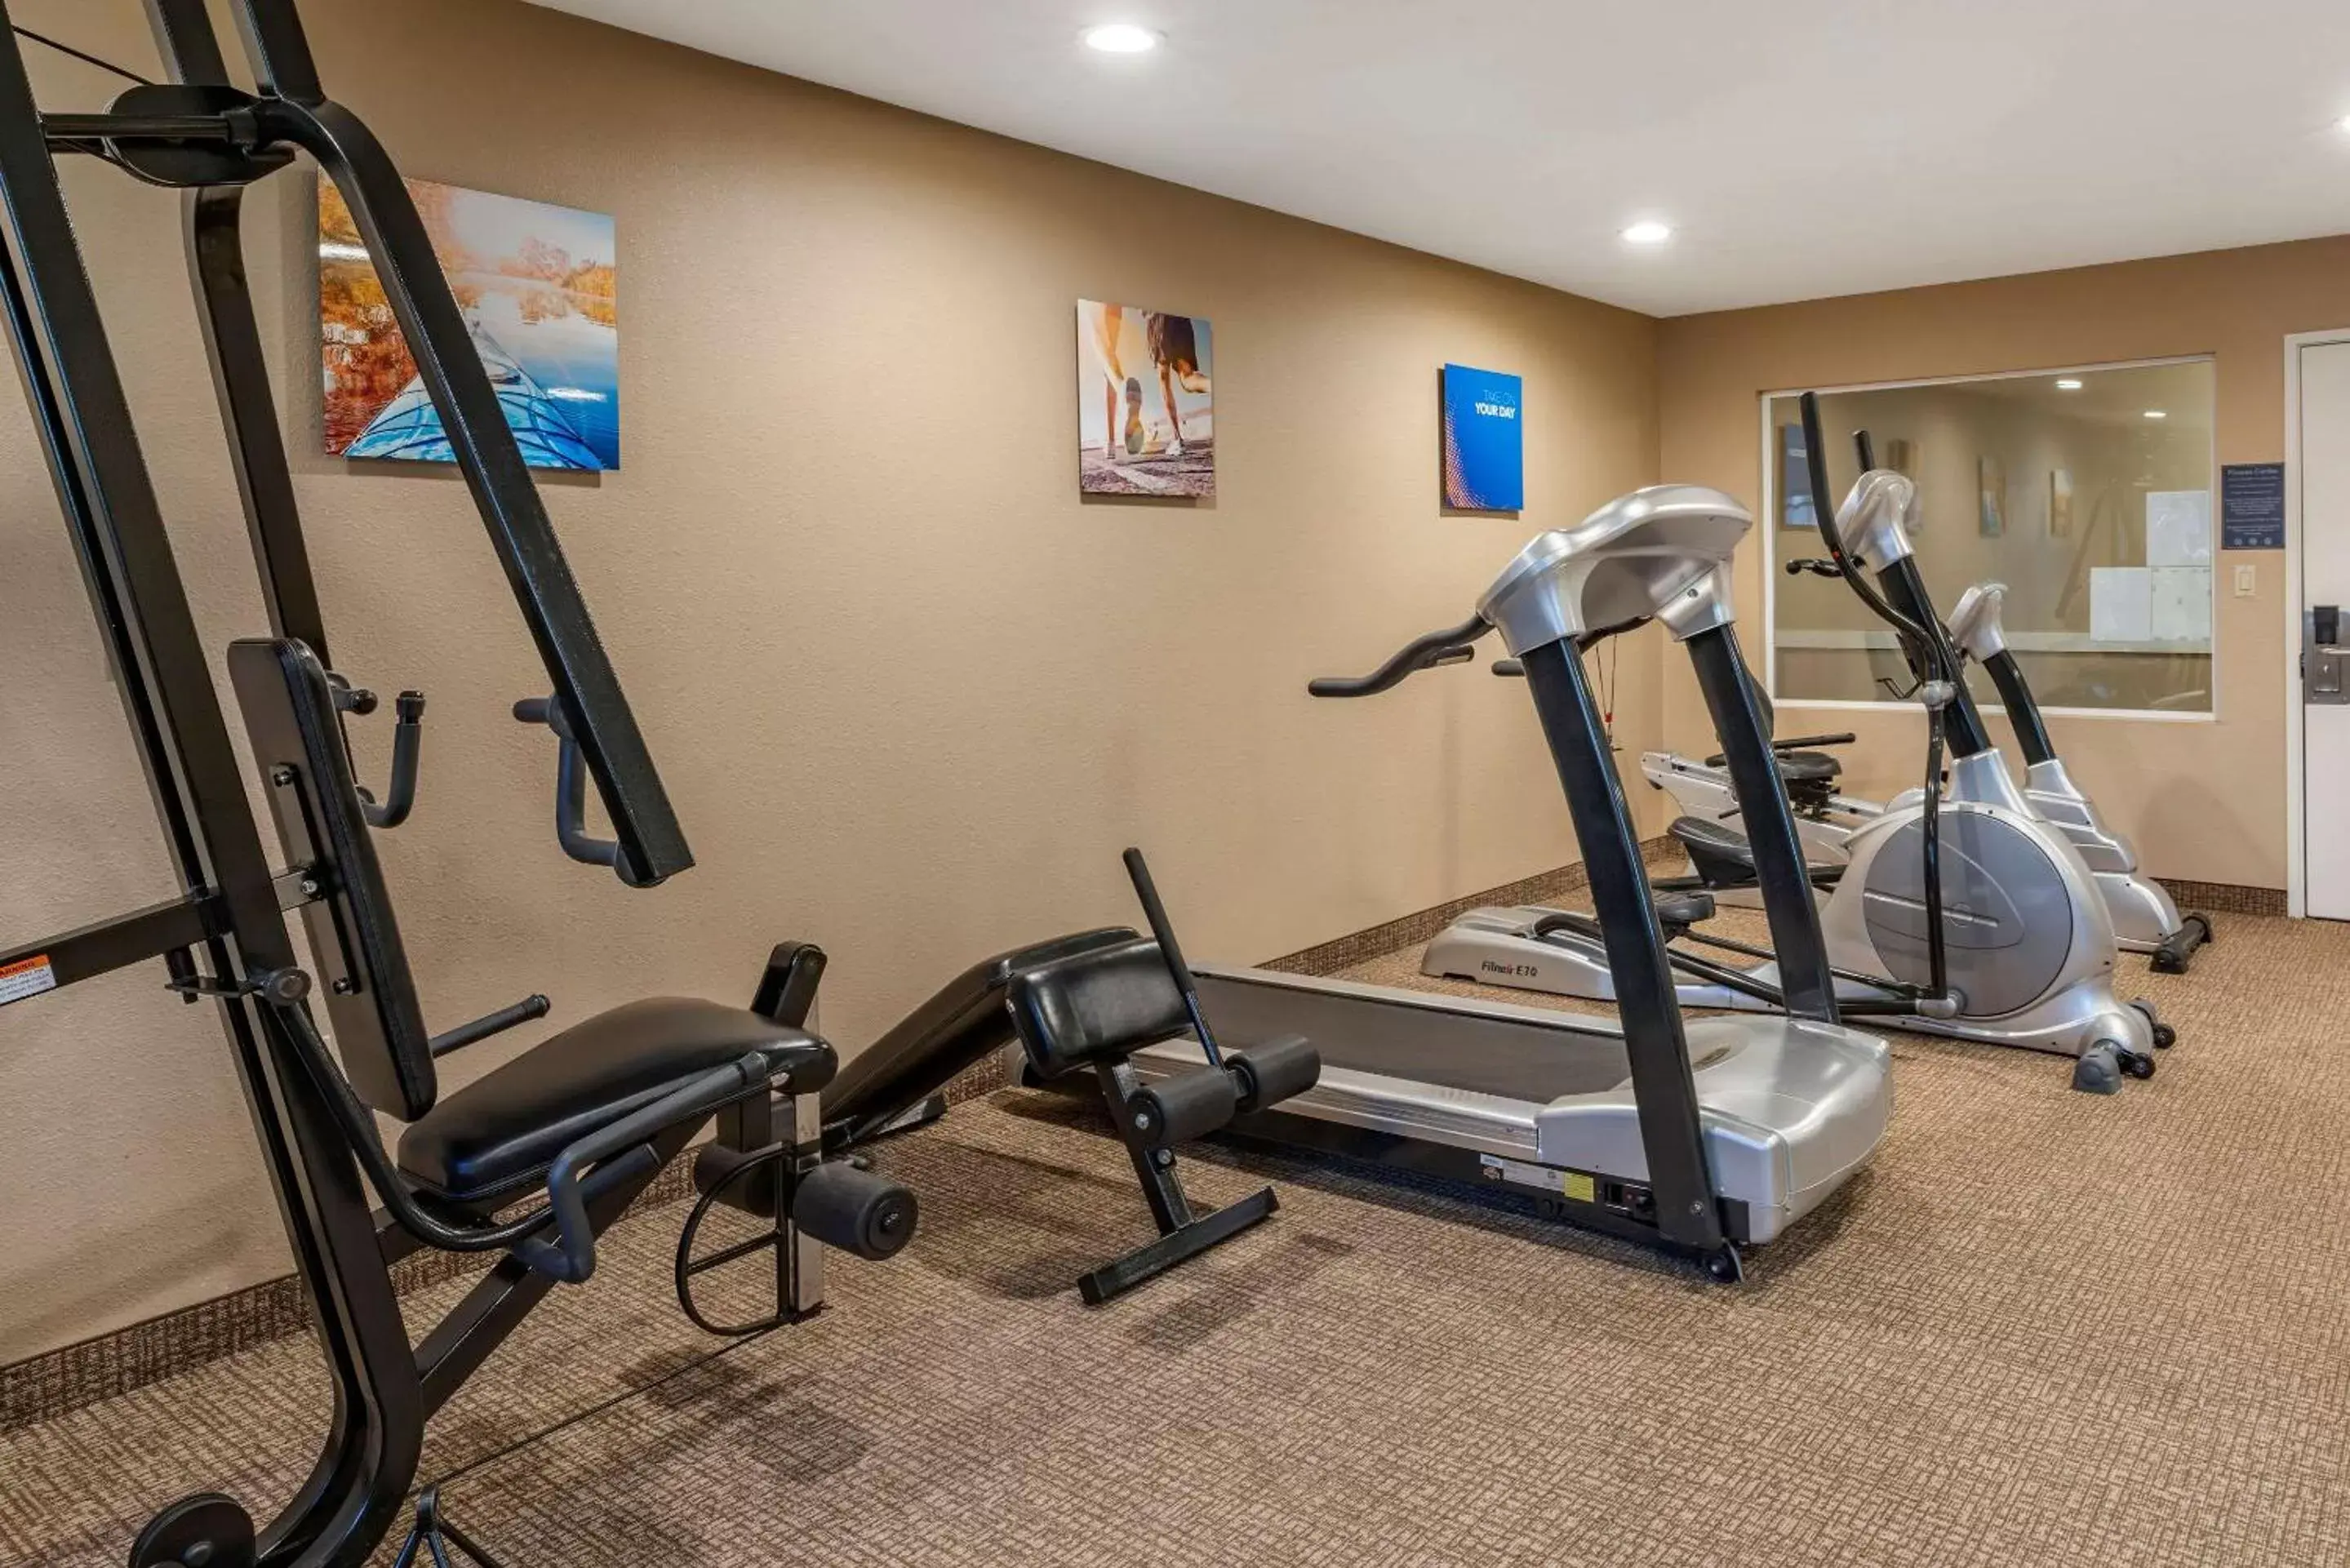 Fitness centre/facilities, Fitness Center/Facilities in Comfort Inn Roseburg